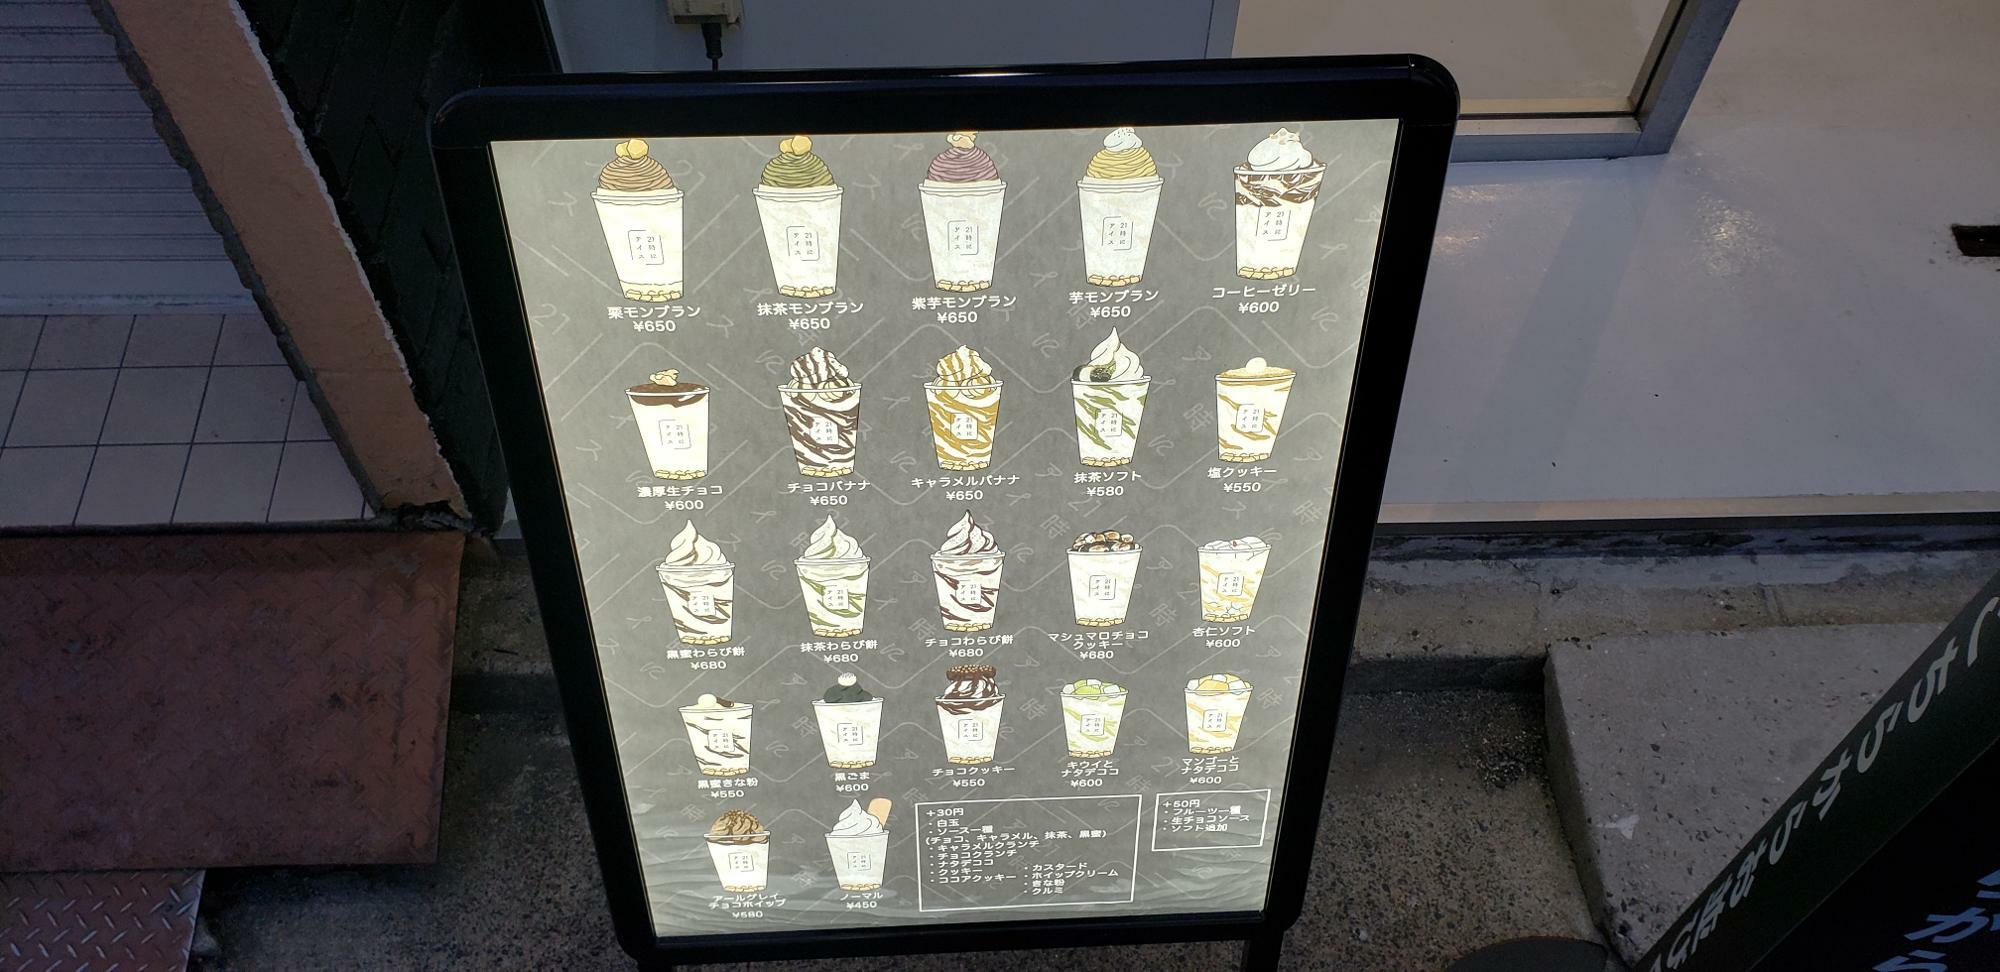 22種類という幅広いアイスクリームのラインナップが魅力的♪